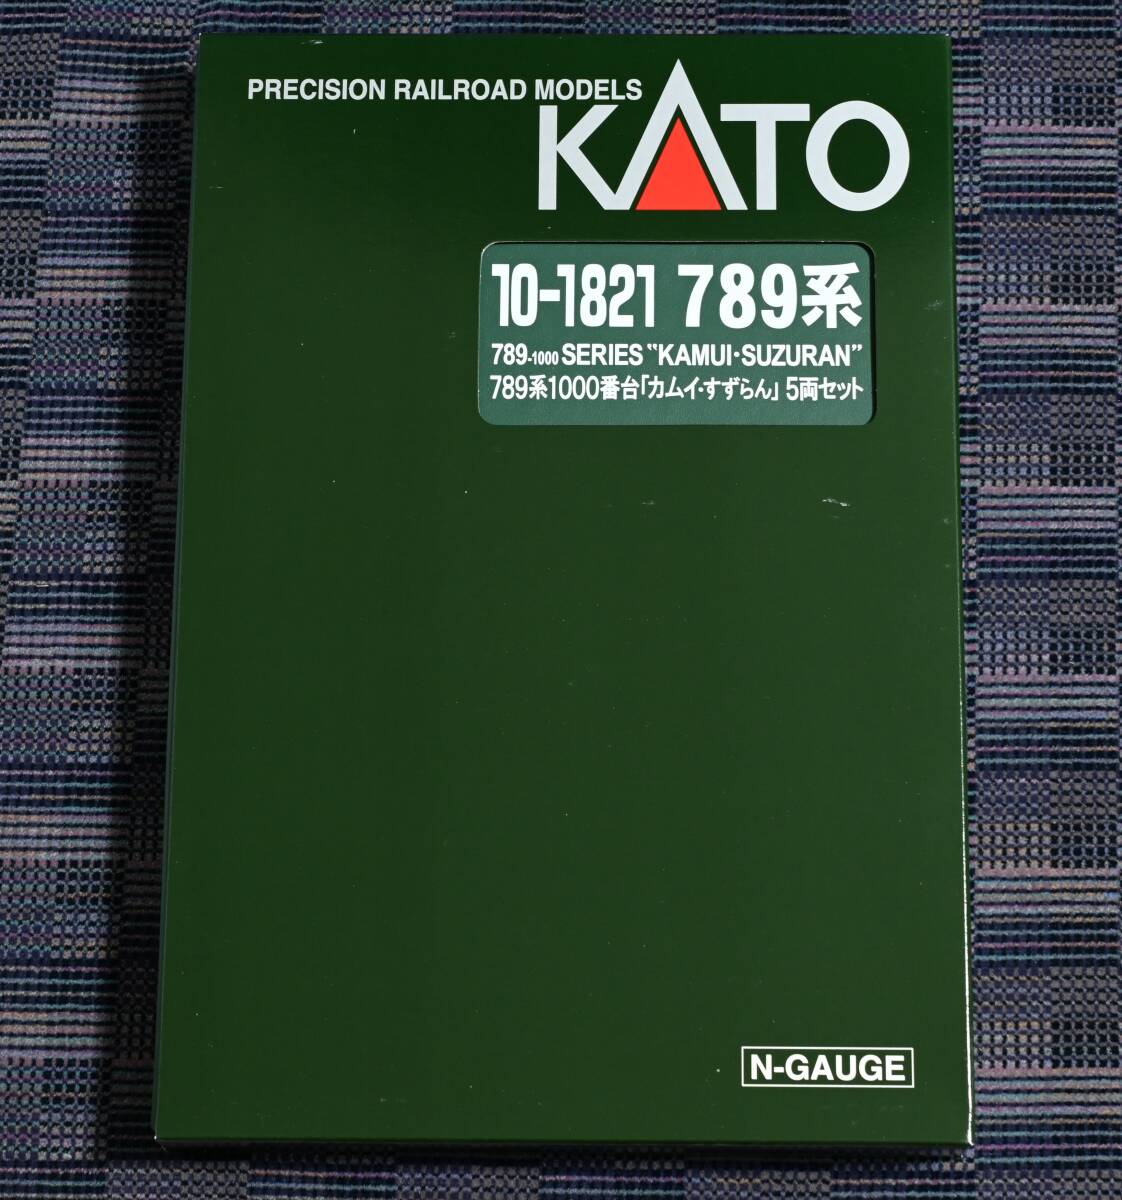 Kato 10-1821 789系1000番台 「カムイ・すずらん」 5両セット_画像1